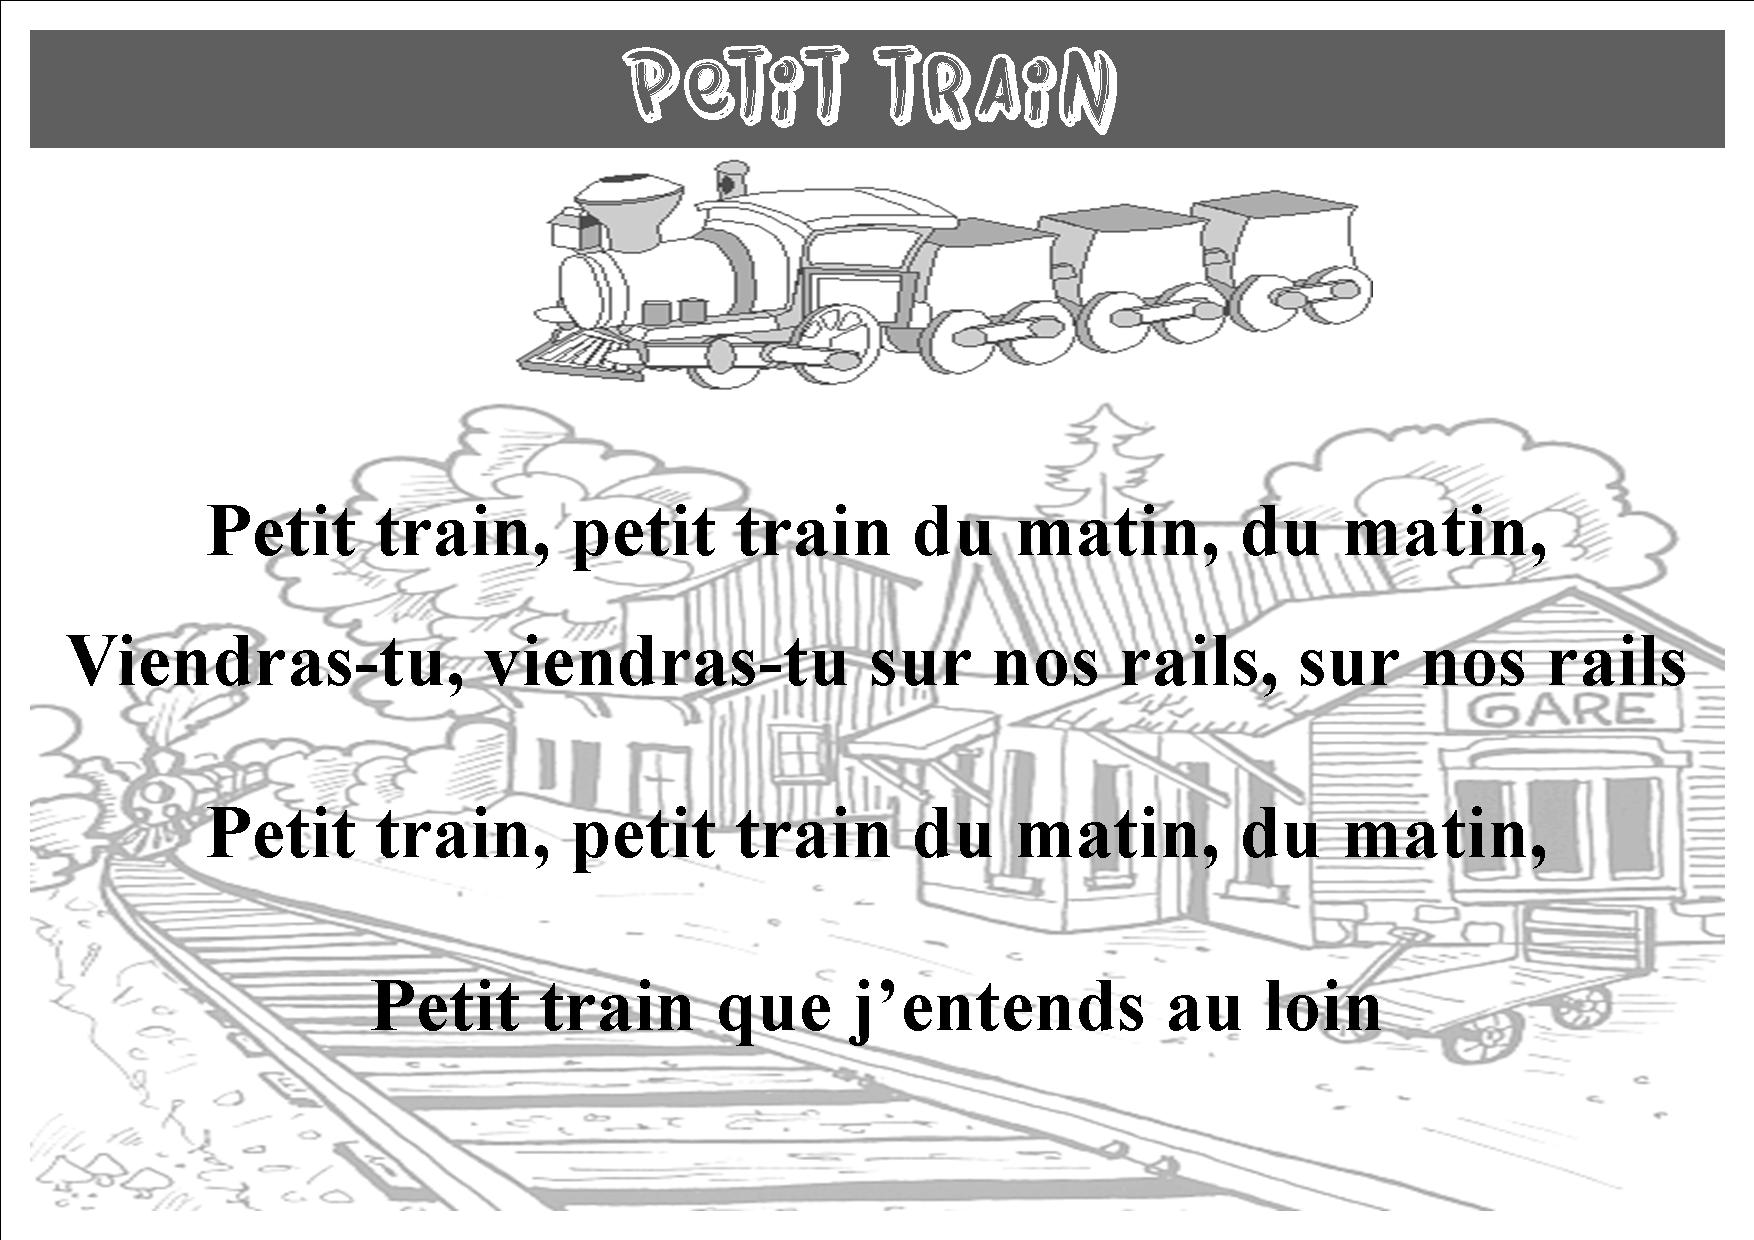 Petit train.jpg